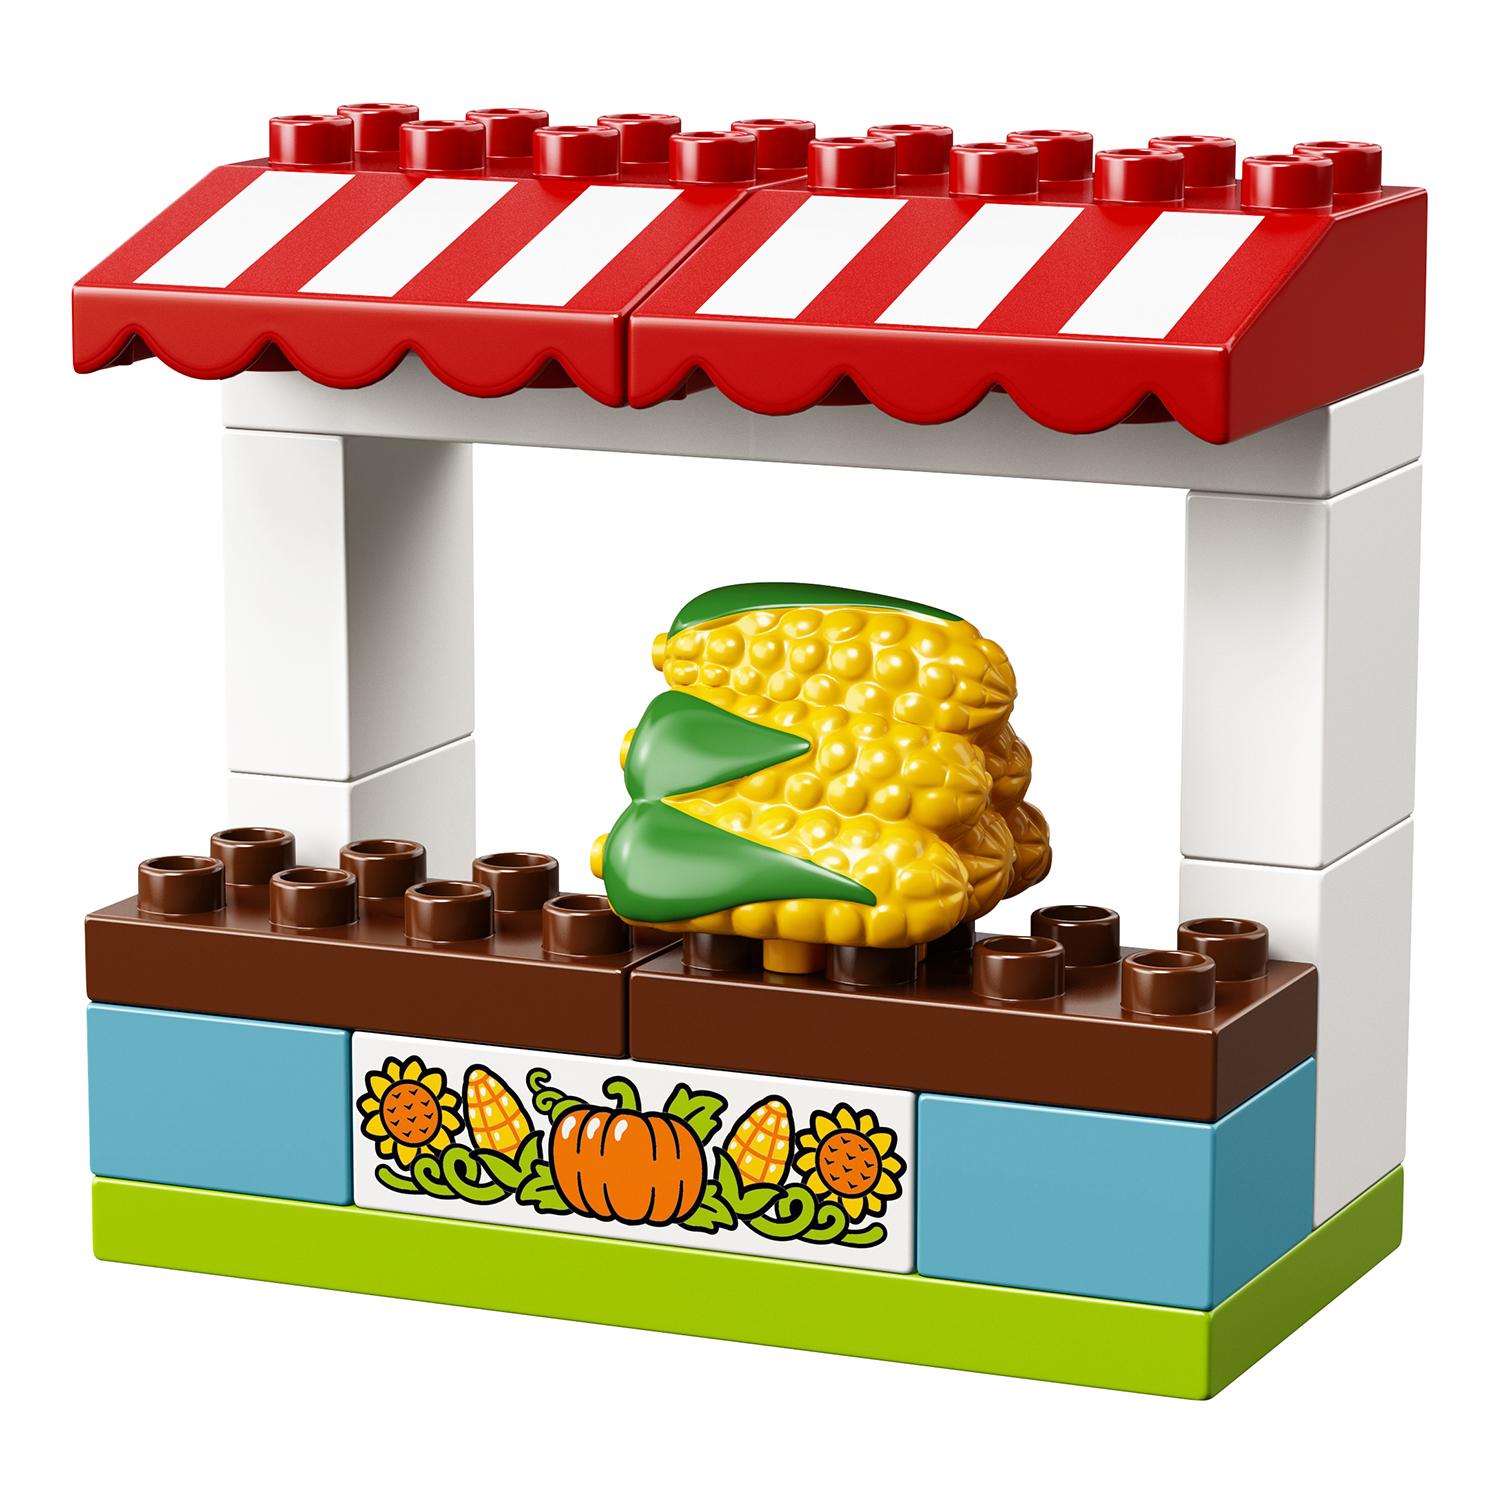 Lego Duplo 10867 Фермерский рынок